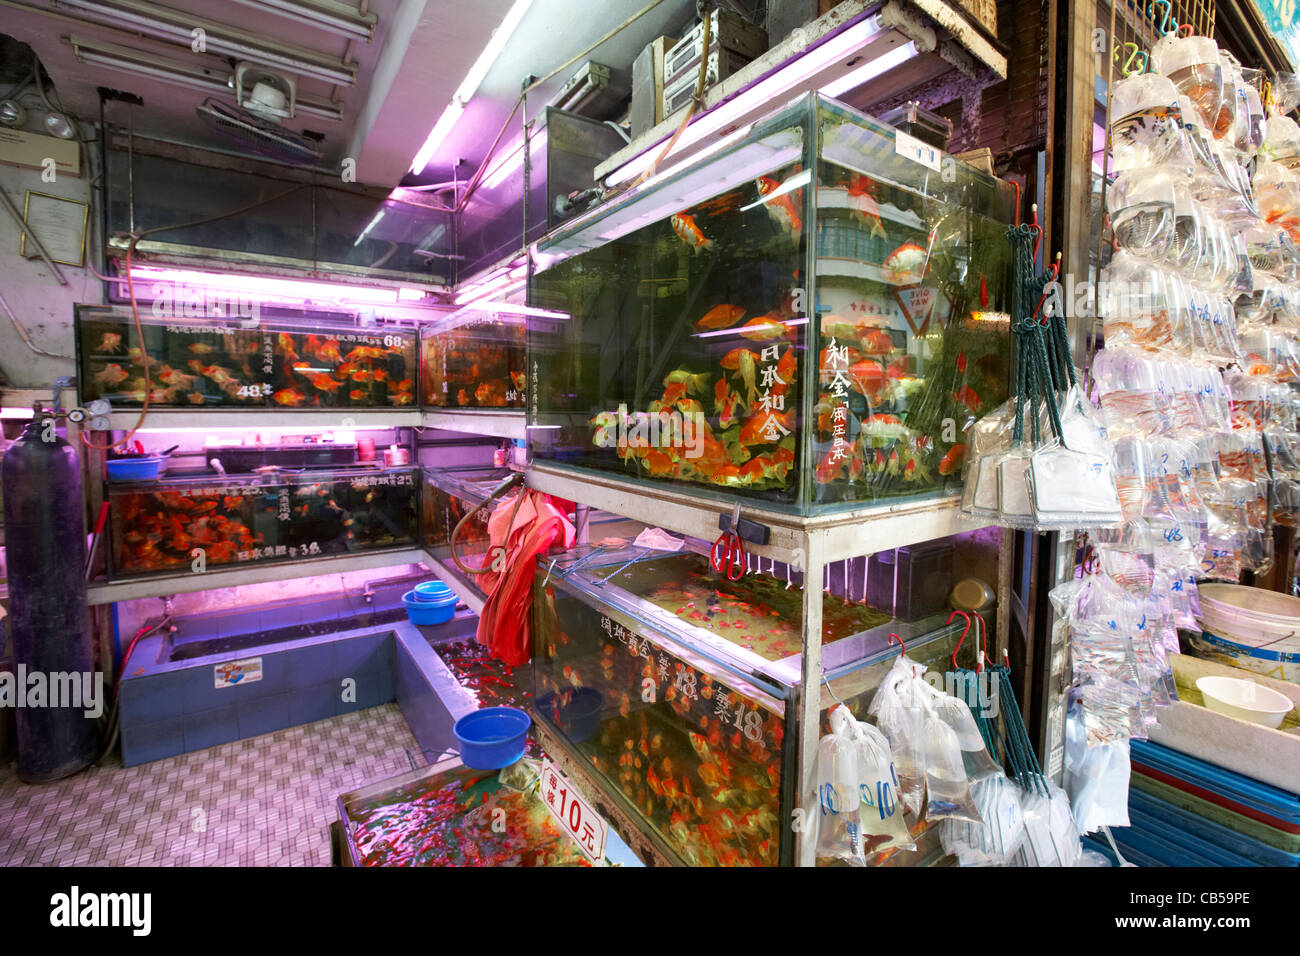 aquaria full of goldfish at a petshop in the market at market goldfish street mong kok district kowloon hong kong hksar china Stock Photo